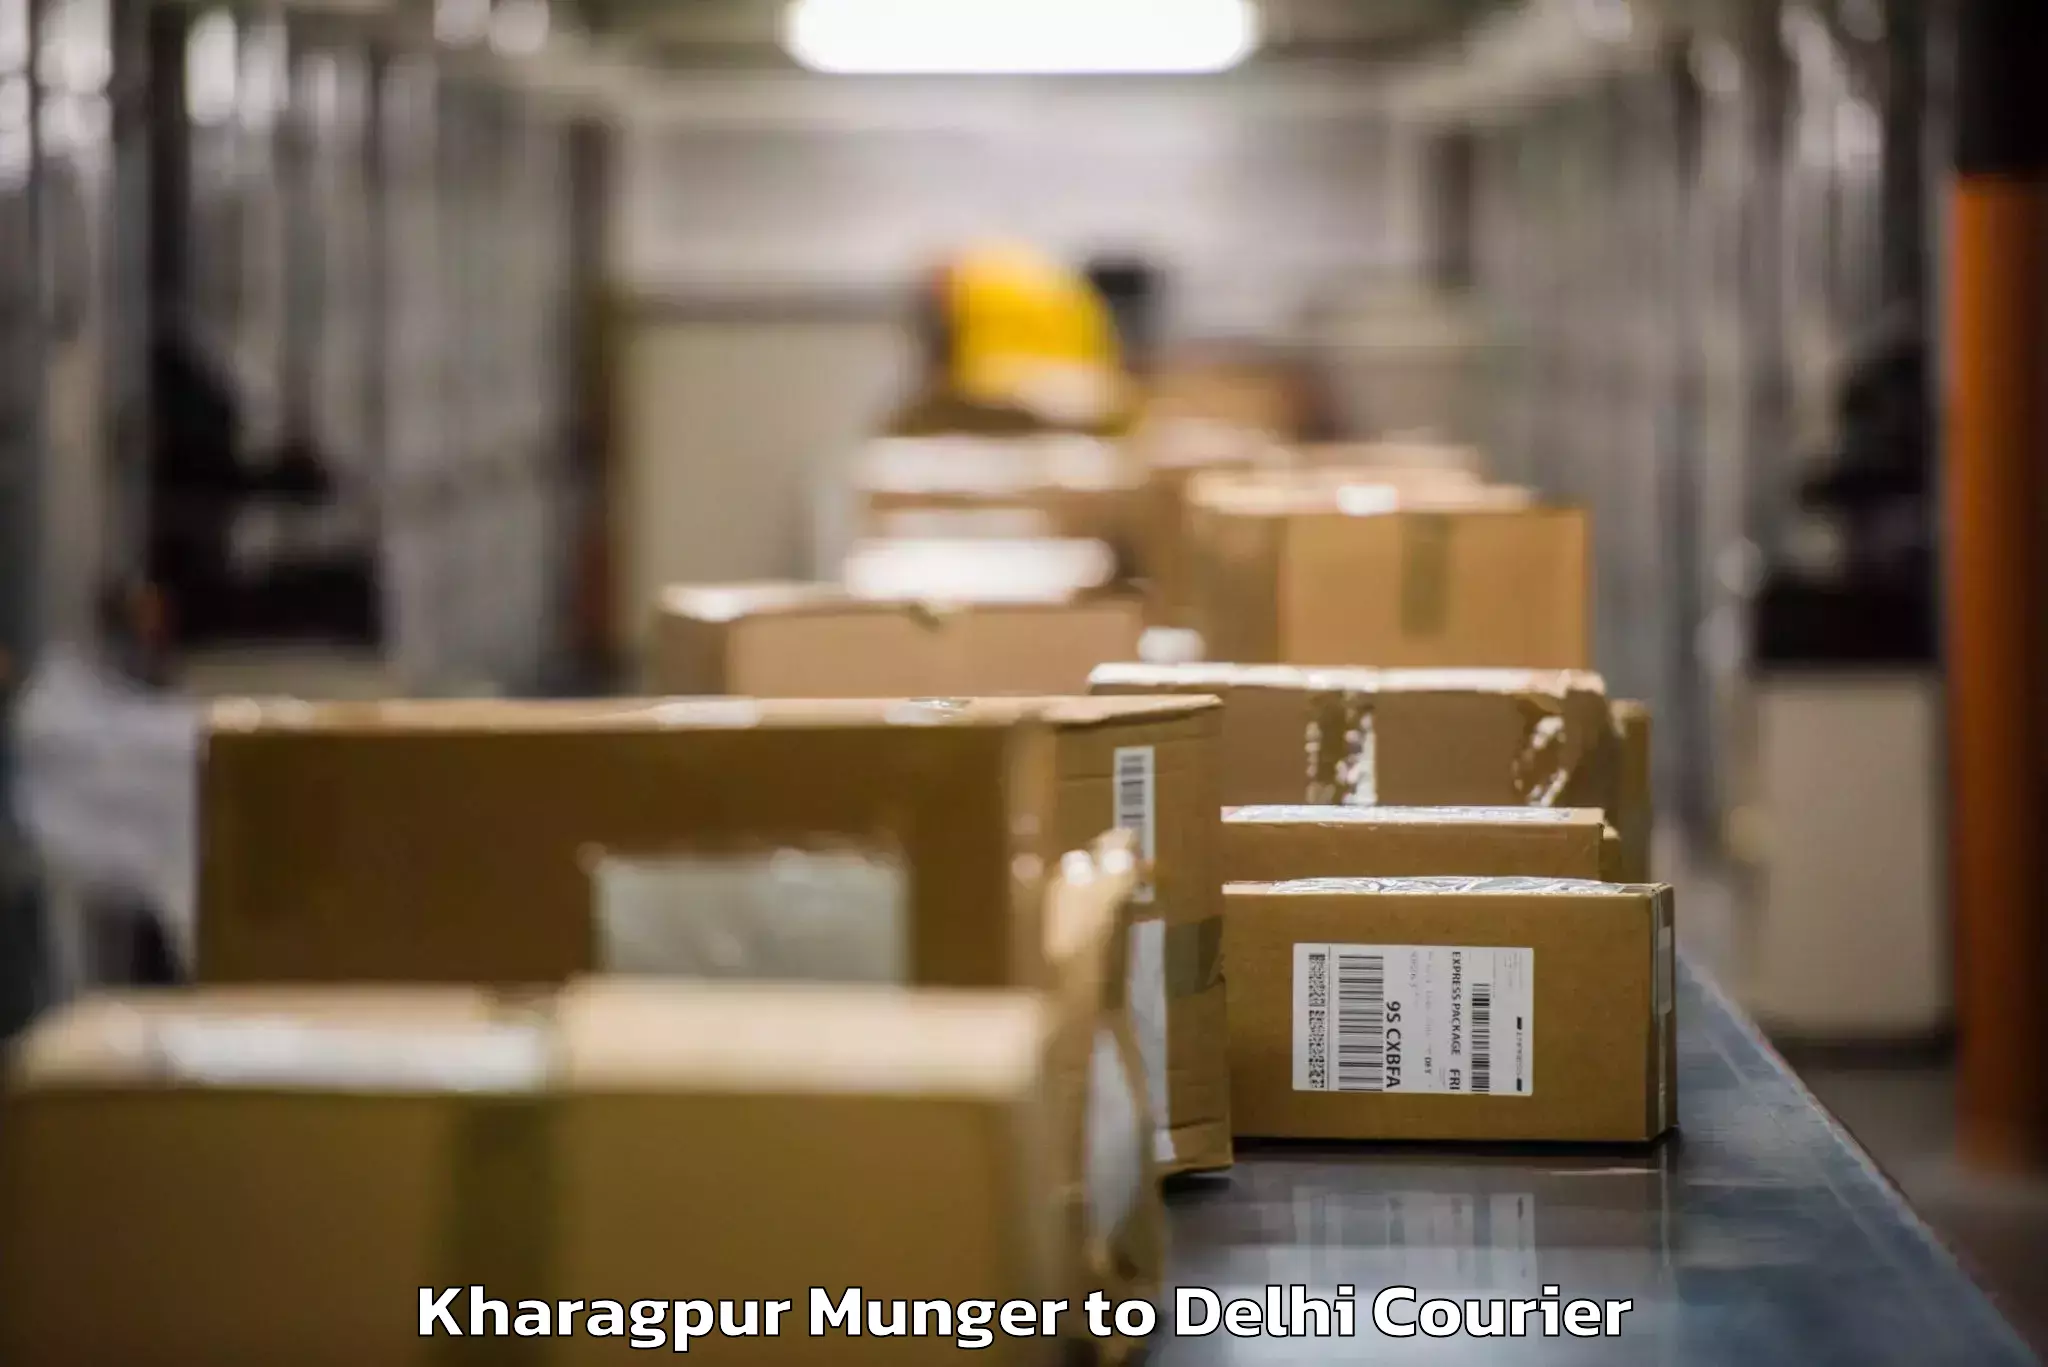 Baggage shipping quotes Kharagpur Munger to Delhi